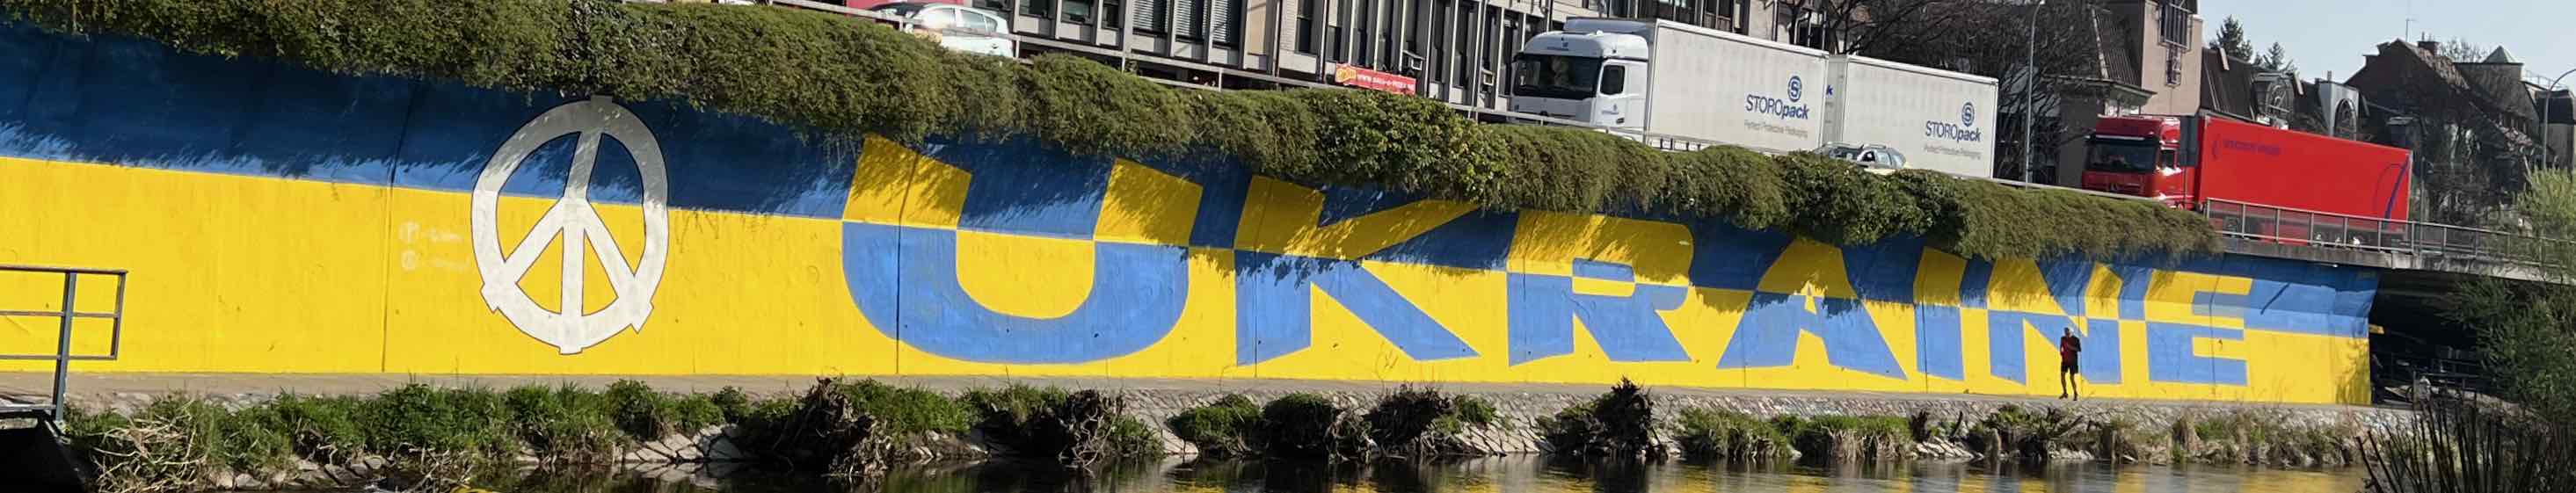 Ukraine Graffiti in Freiburg